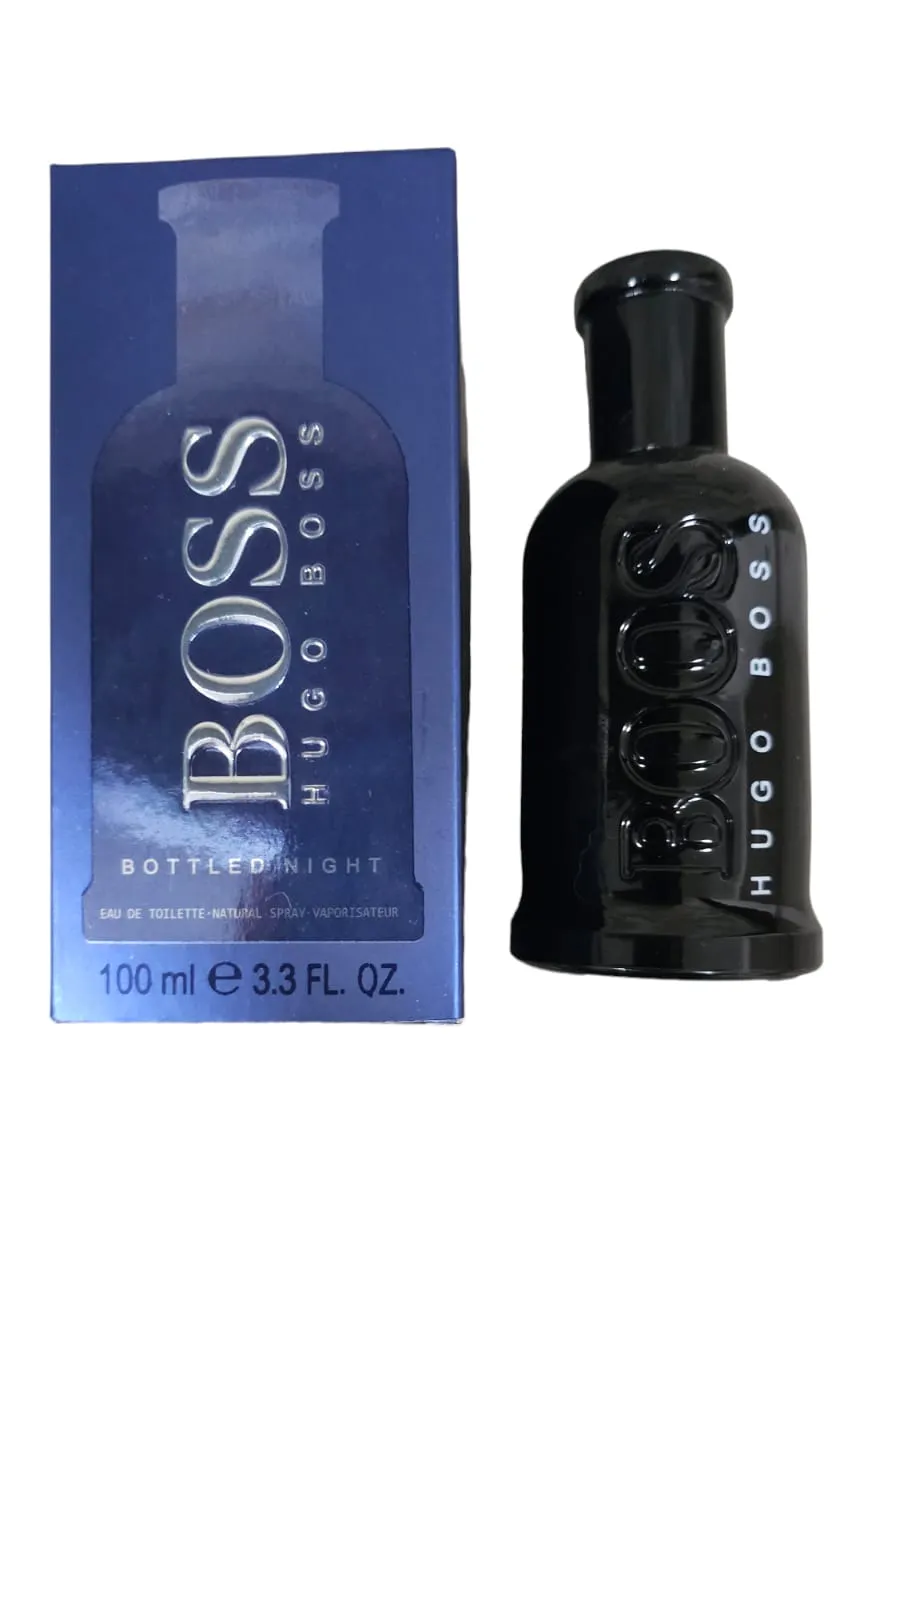 Perfume Boss Bottled Night - Hombre